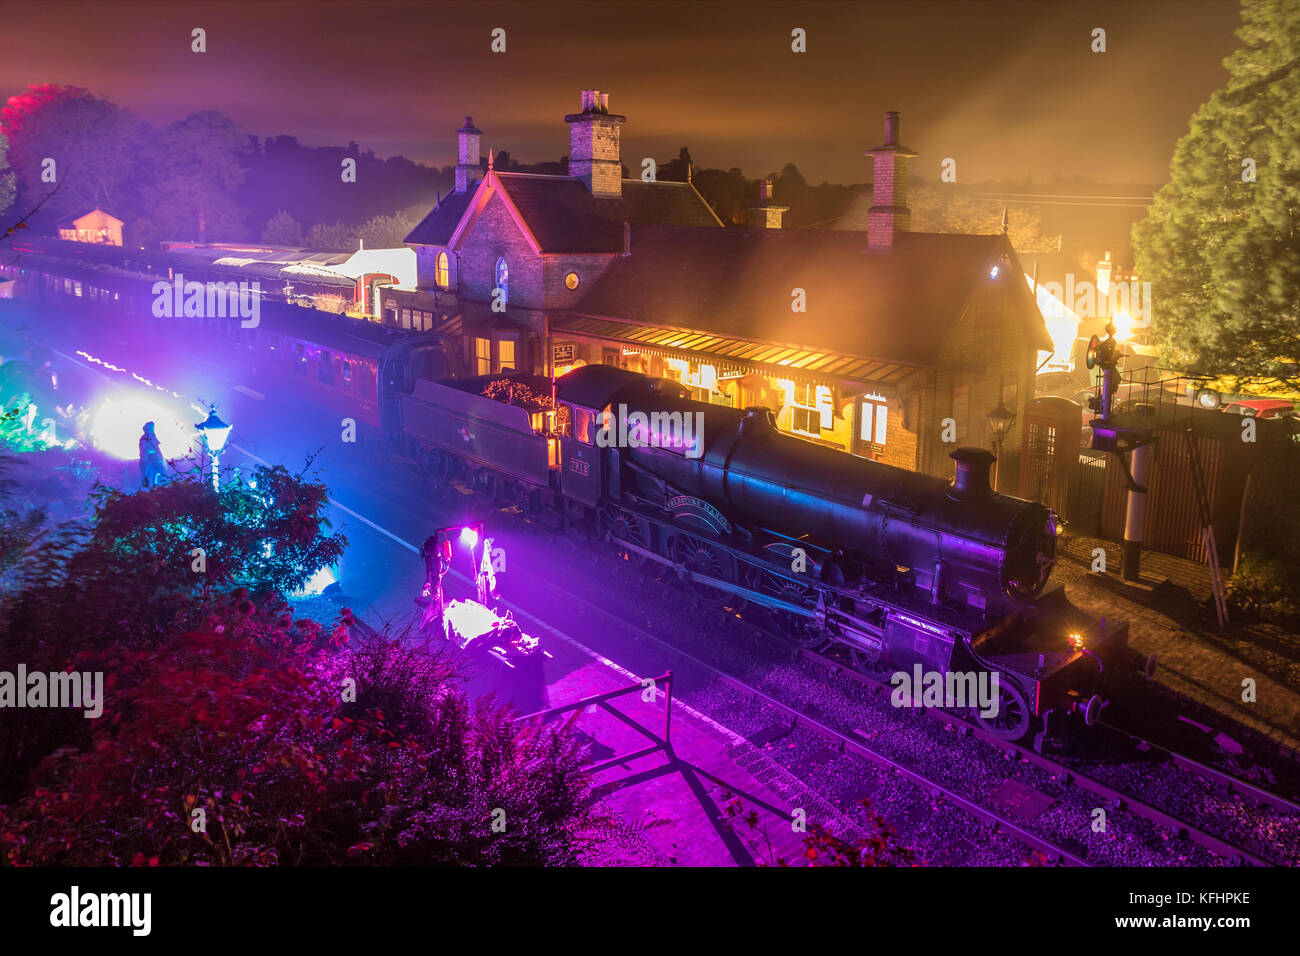 Una popular atracción turística de Shropshire, el Severn Valley Railway ofrece especiales de temporada de Halloween. Un tren fantasma a vapor llega a la estación de Arley después de un viaje de luces a lo largo del ferrocarril del valle de Severn. Durante tres noches los juerguistas disfrutan de las luces a vapor en la oscuridad de la eery pasando a través de puestos vestidos de halloween en el camino a la estación de Arley cerca de Bewdley, donde la iluminación especial, el humo y los actores crearon la experiencia de la estación encantado. Preservado Manor clase 4-6-0 motor de vapor 7812, Erlestoke Manor se ve saliendo de Arley para el viaje de vuelta a Kidderminster. Foto de stock